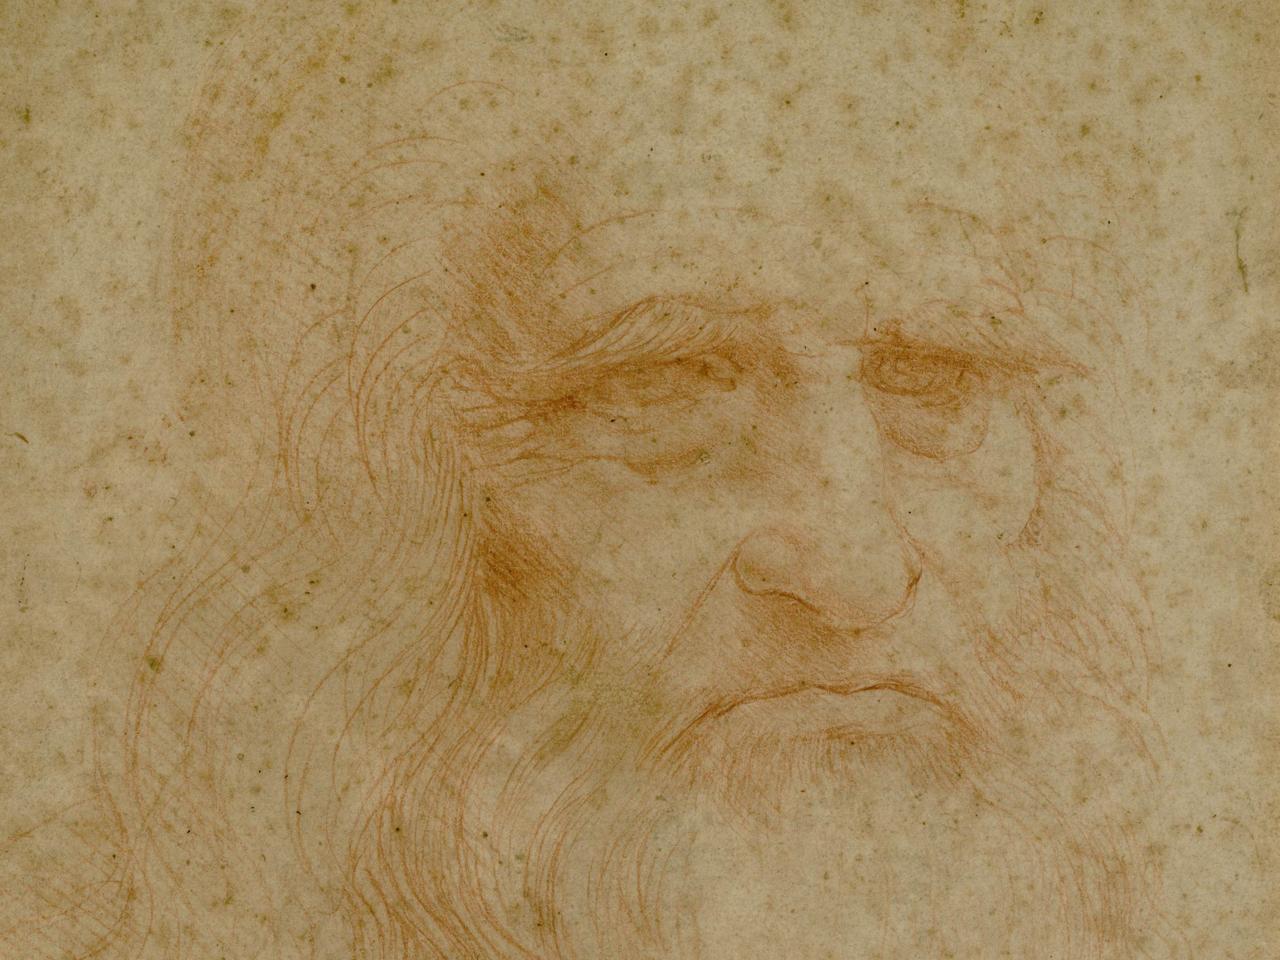 Mostre: Autoritratto di Leonardo per la prima volta ai Musei Capitolini  